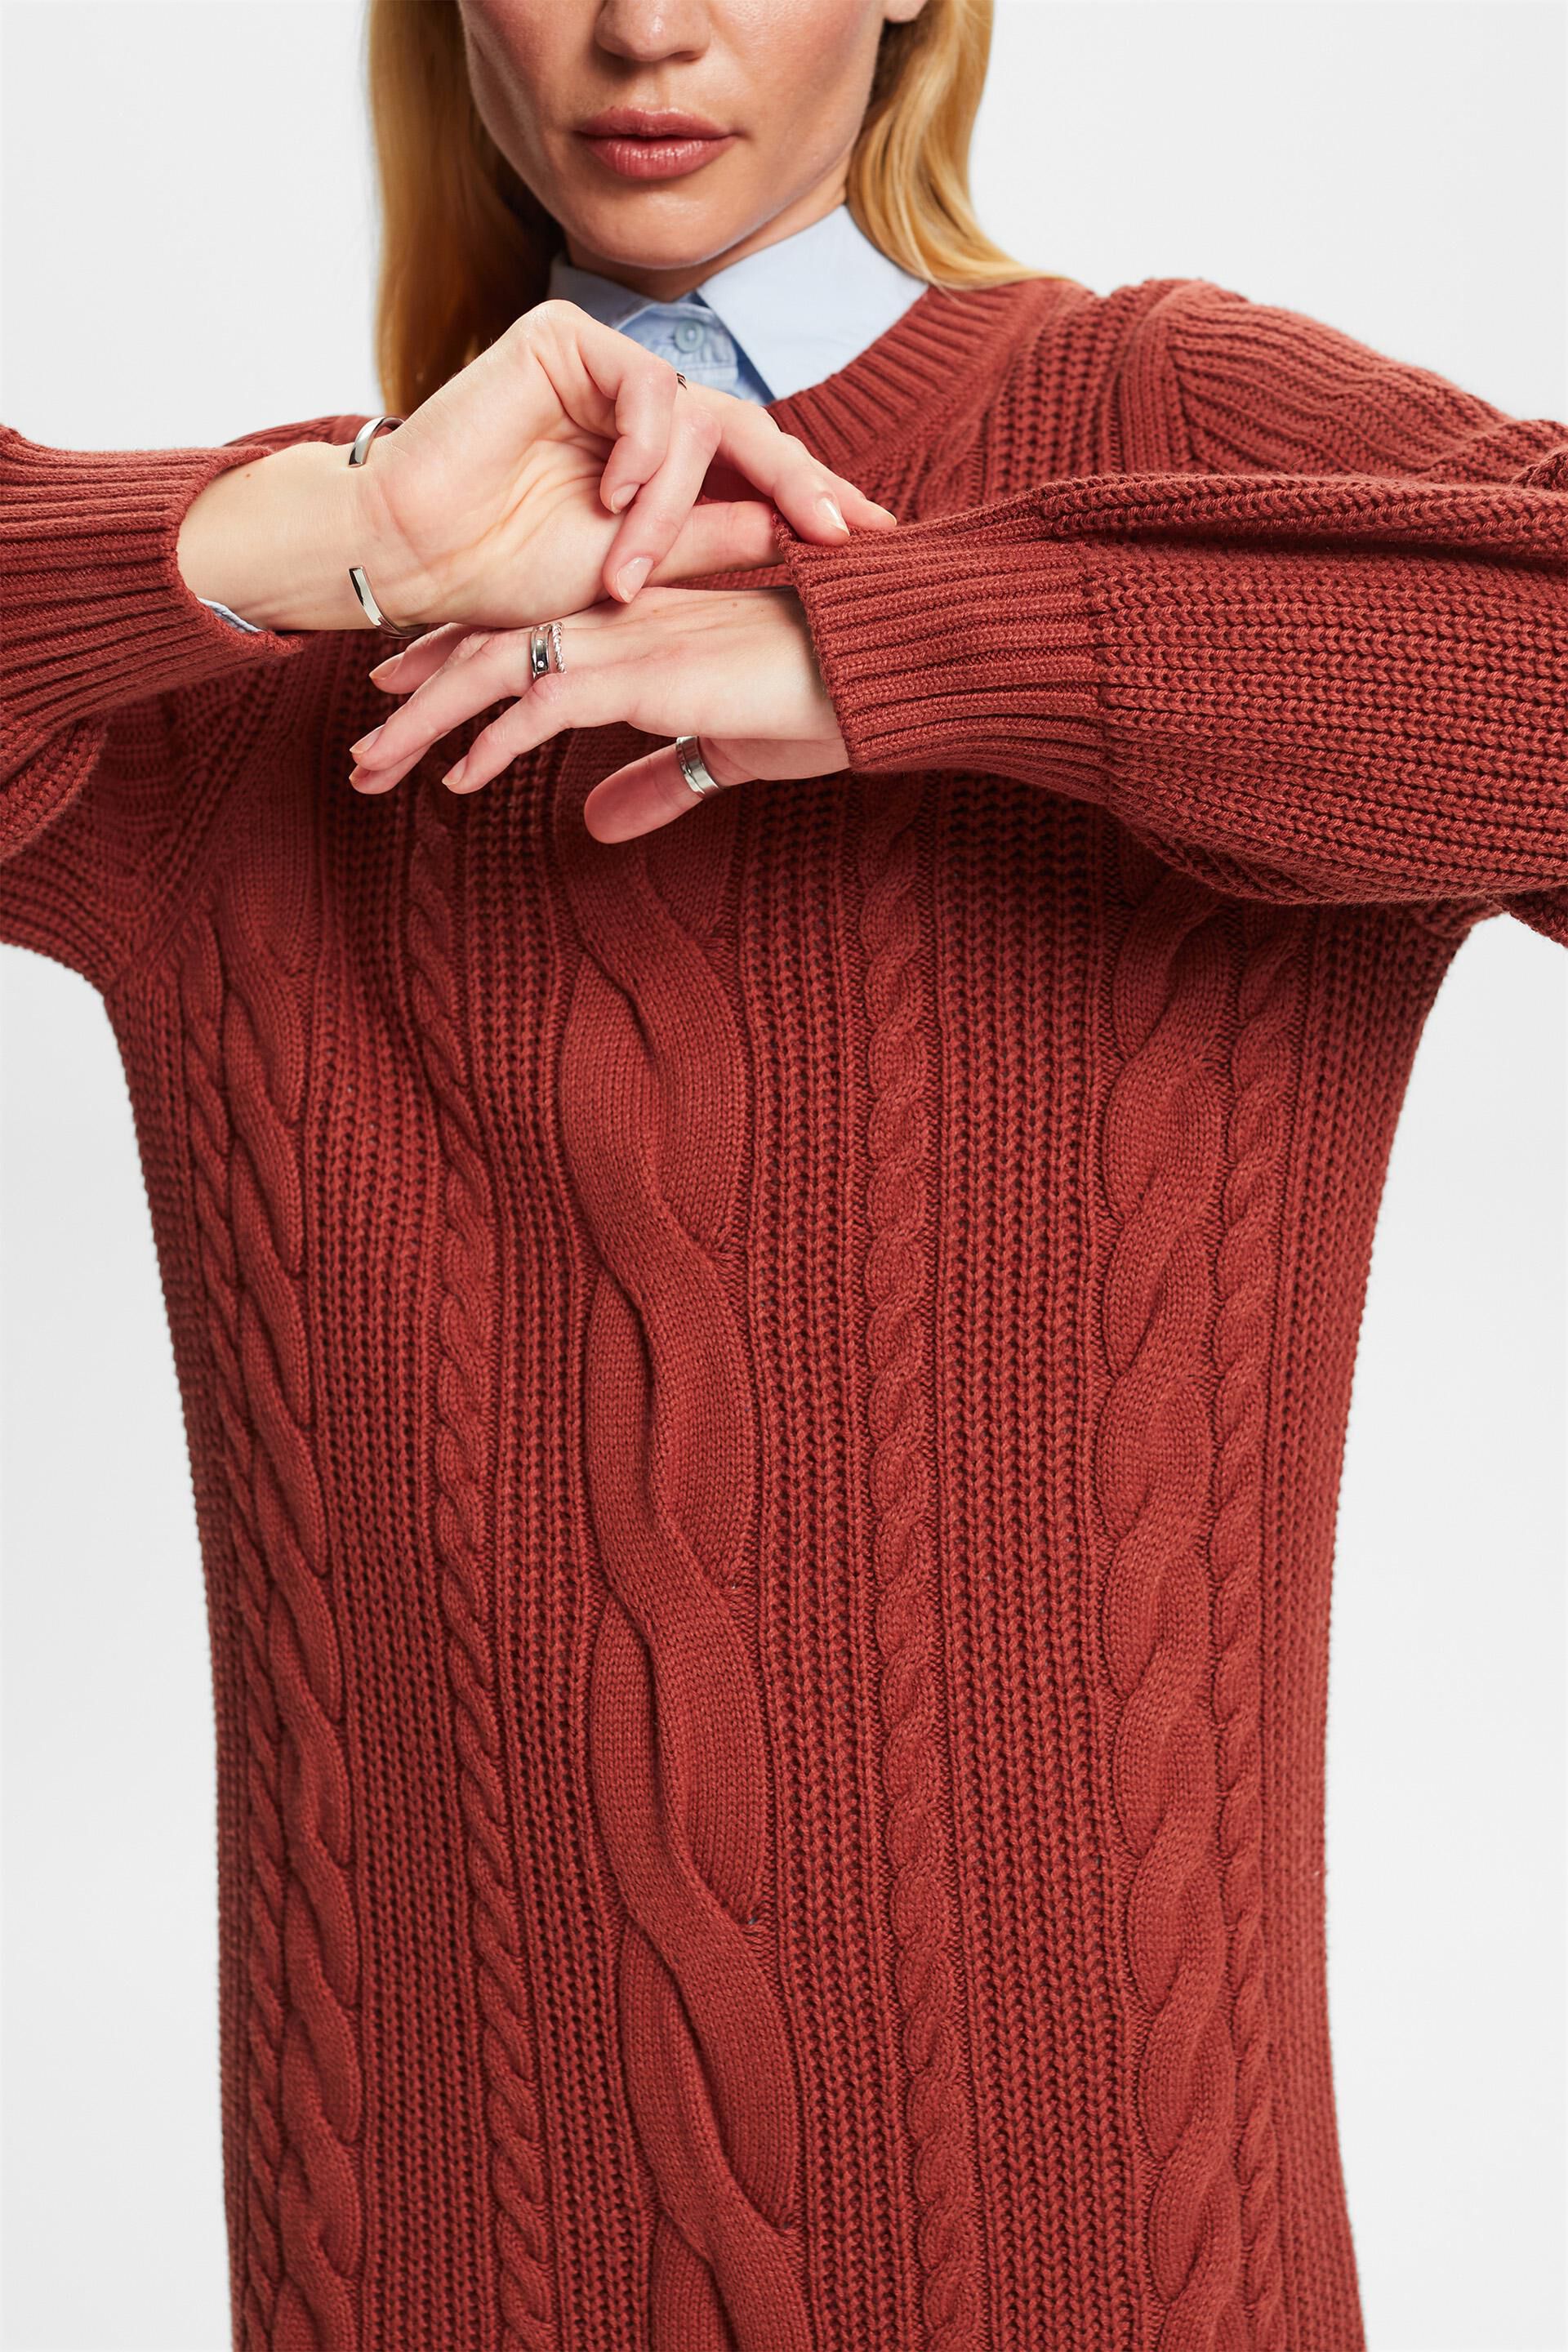 Esprit Damen Pulloverkleid aus Wollmischung mit Zopfmuster